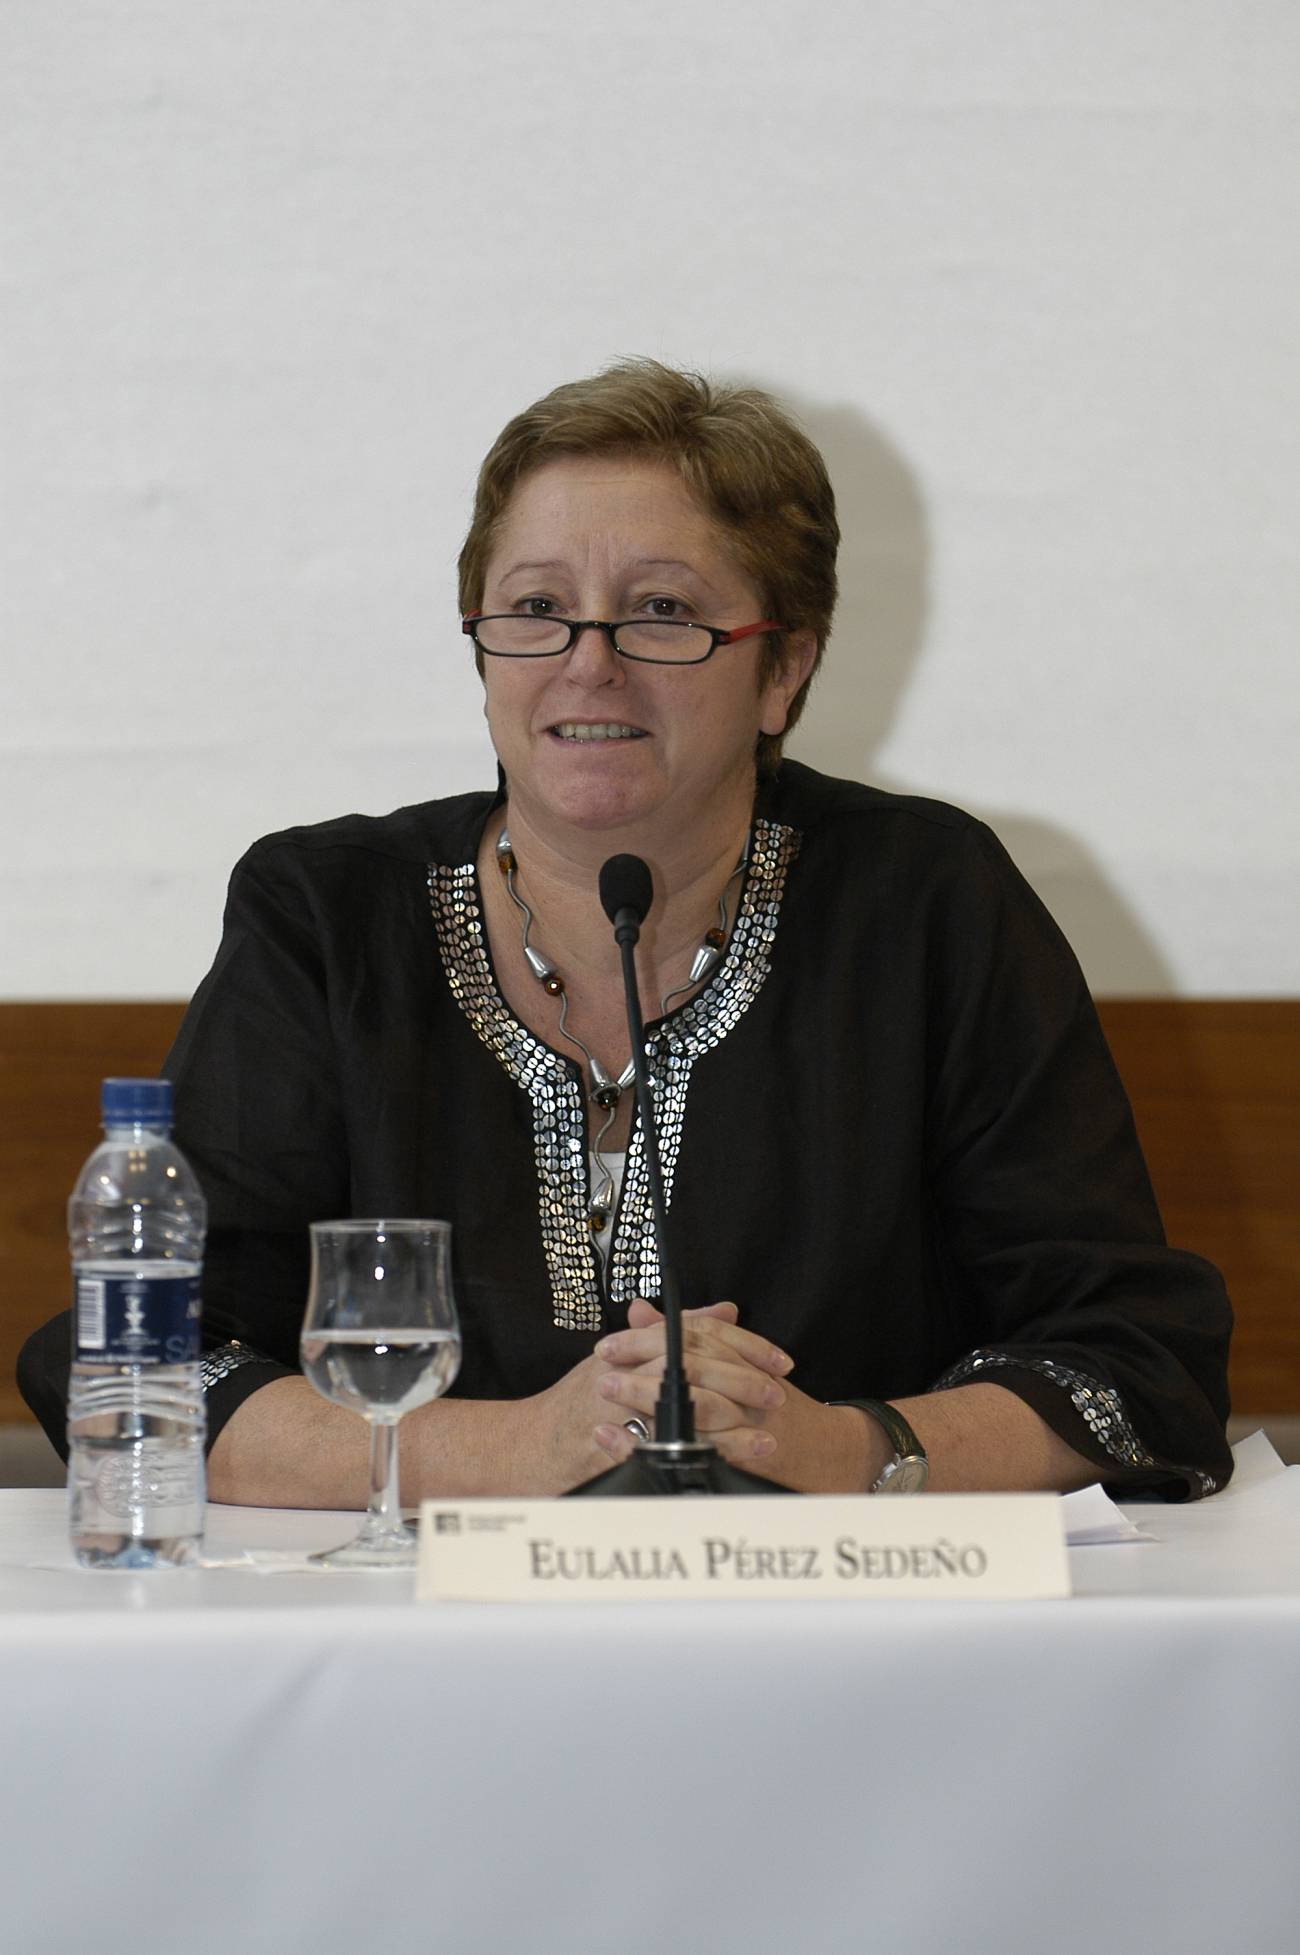 Eulalia Pérez Sedeño